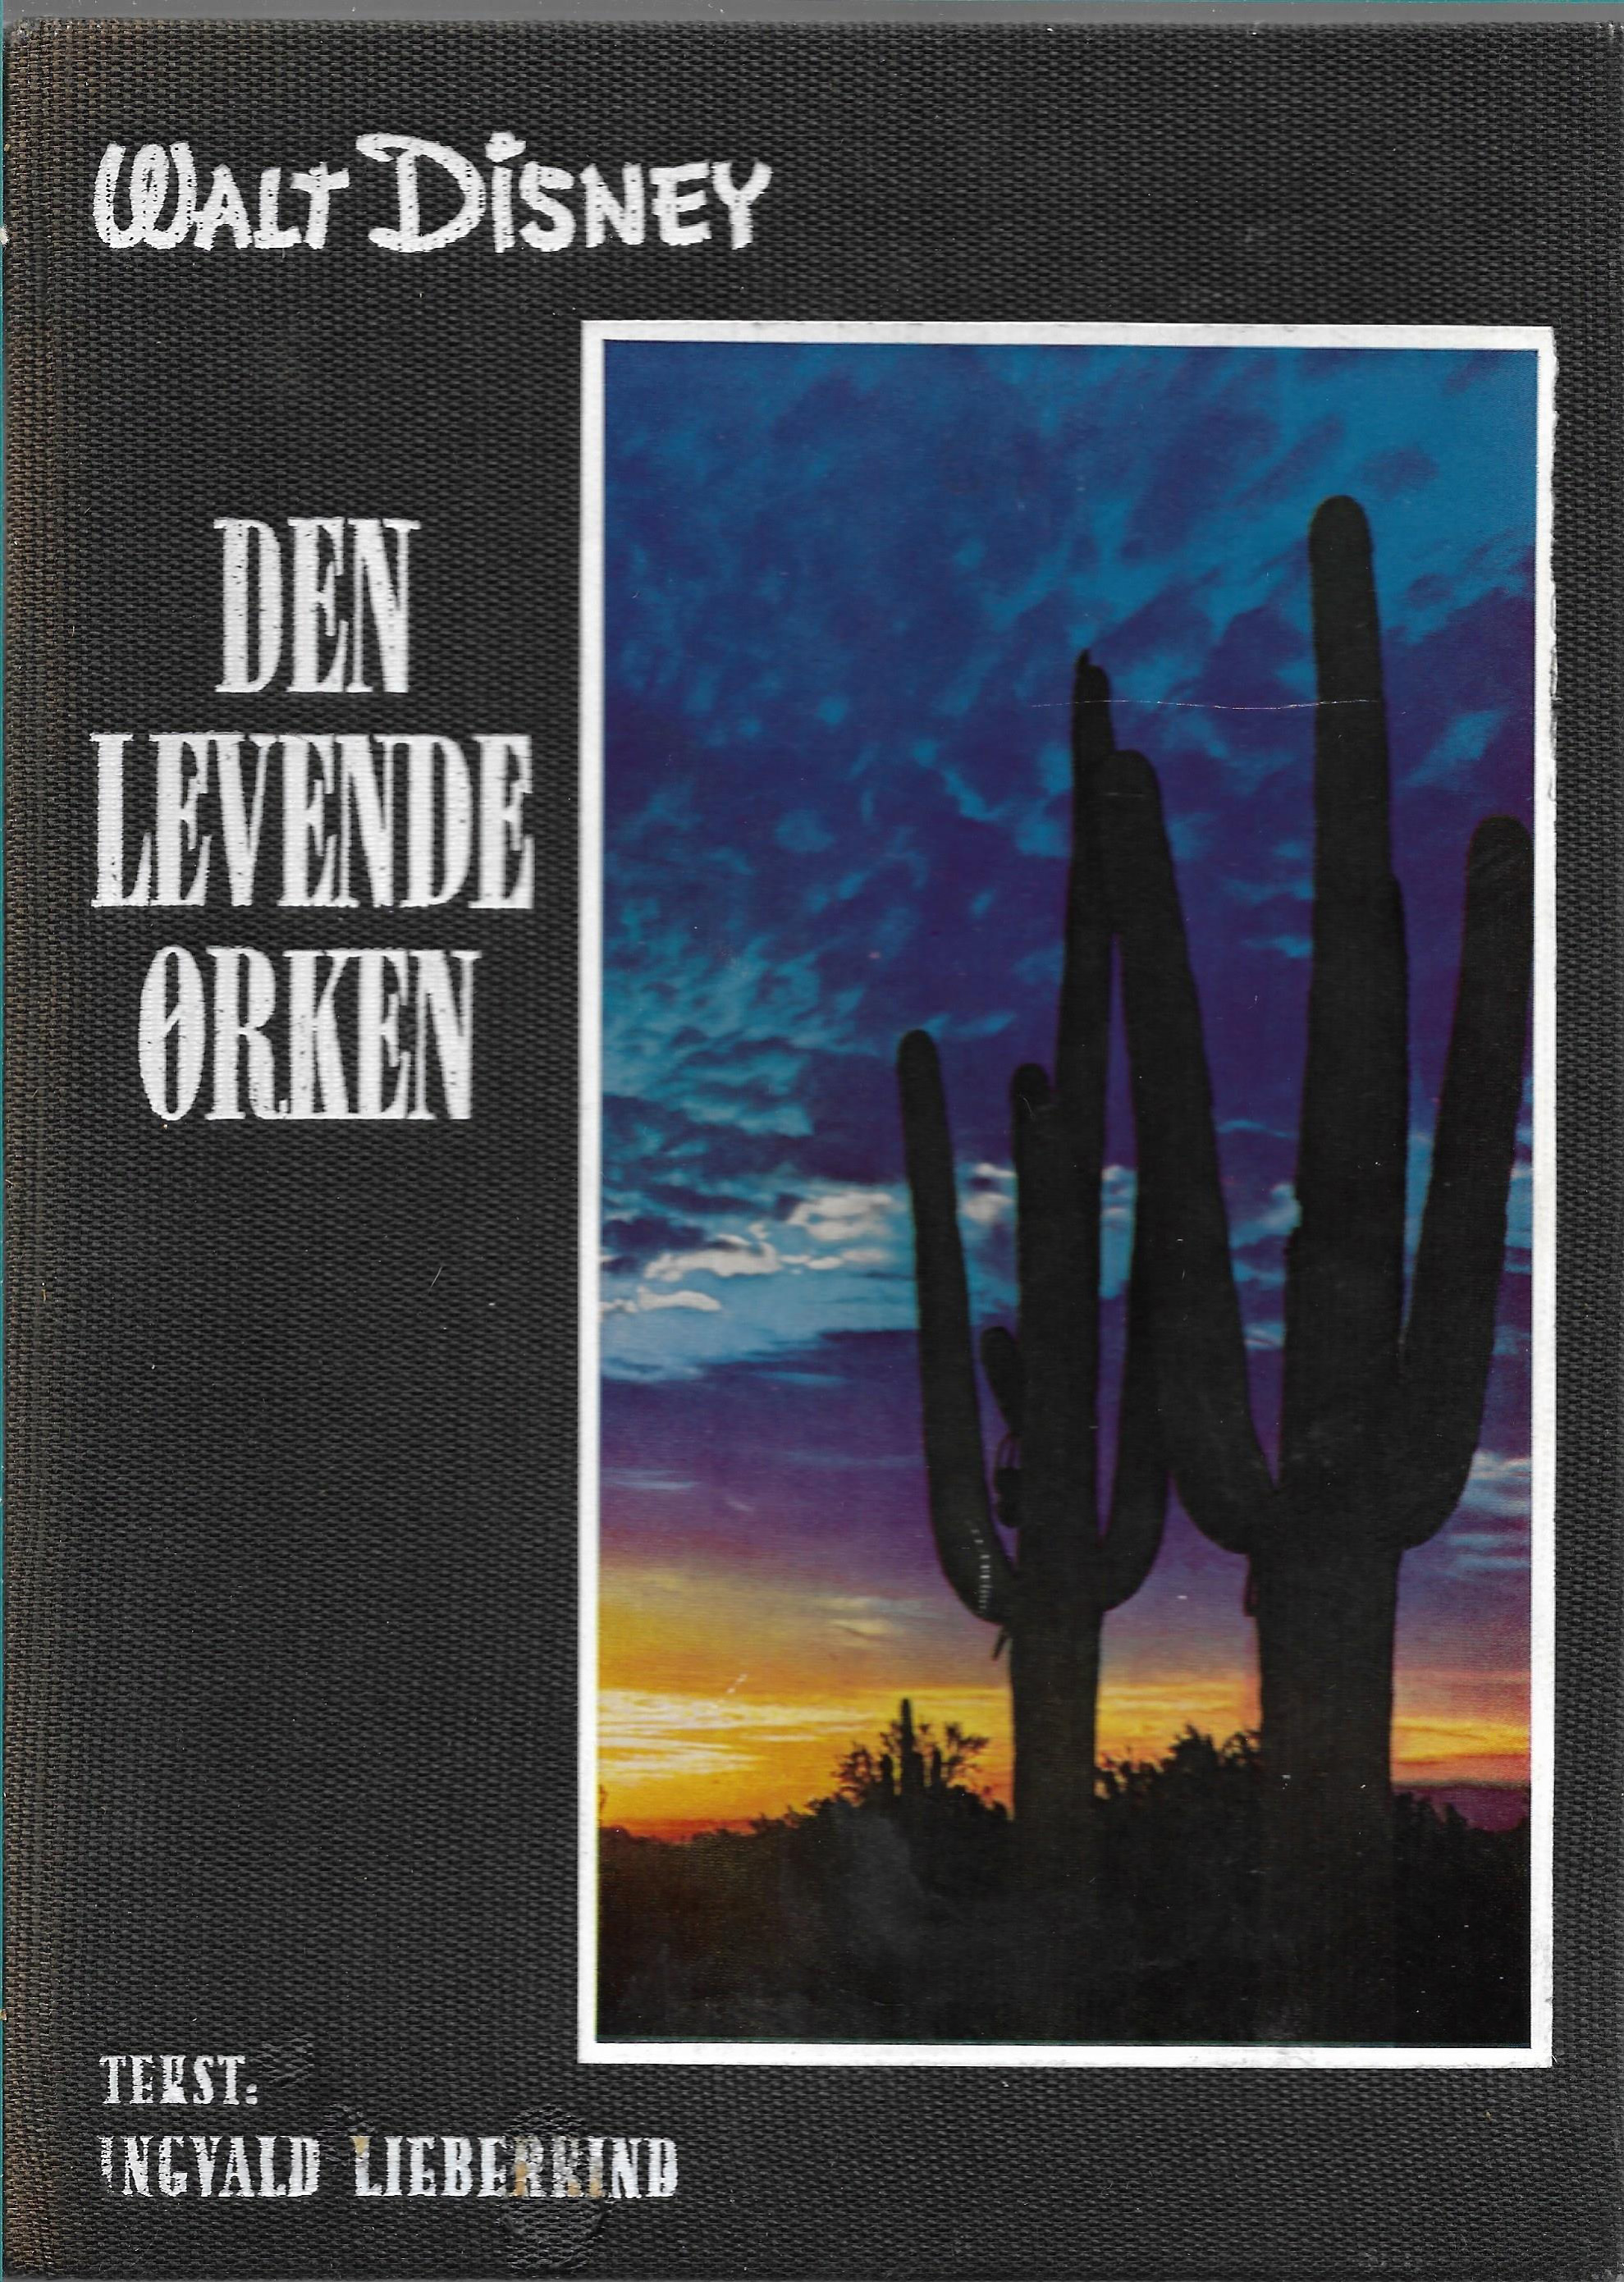 Den levende ørken - Walt Disney - Ingvald Lieberkind 1960-1